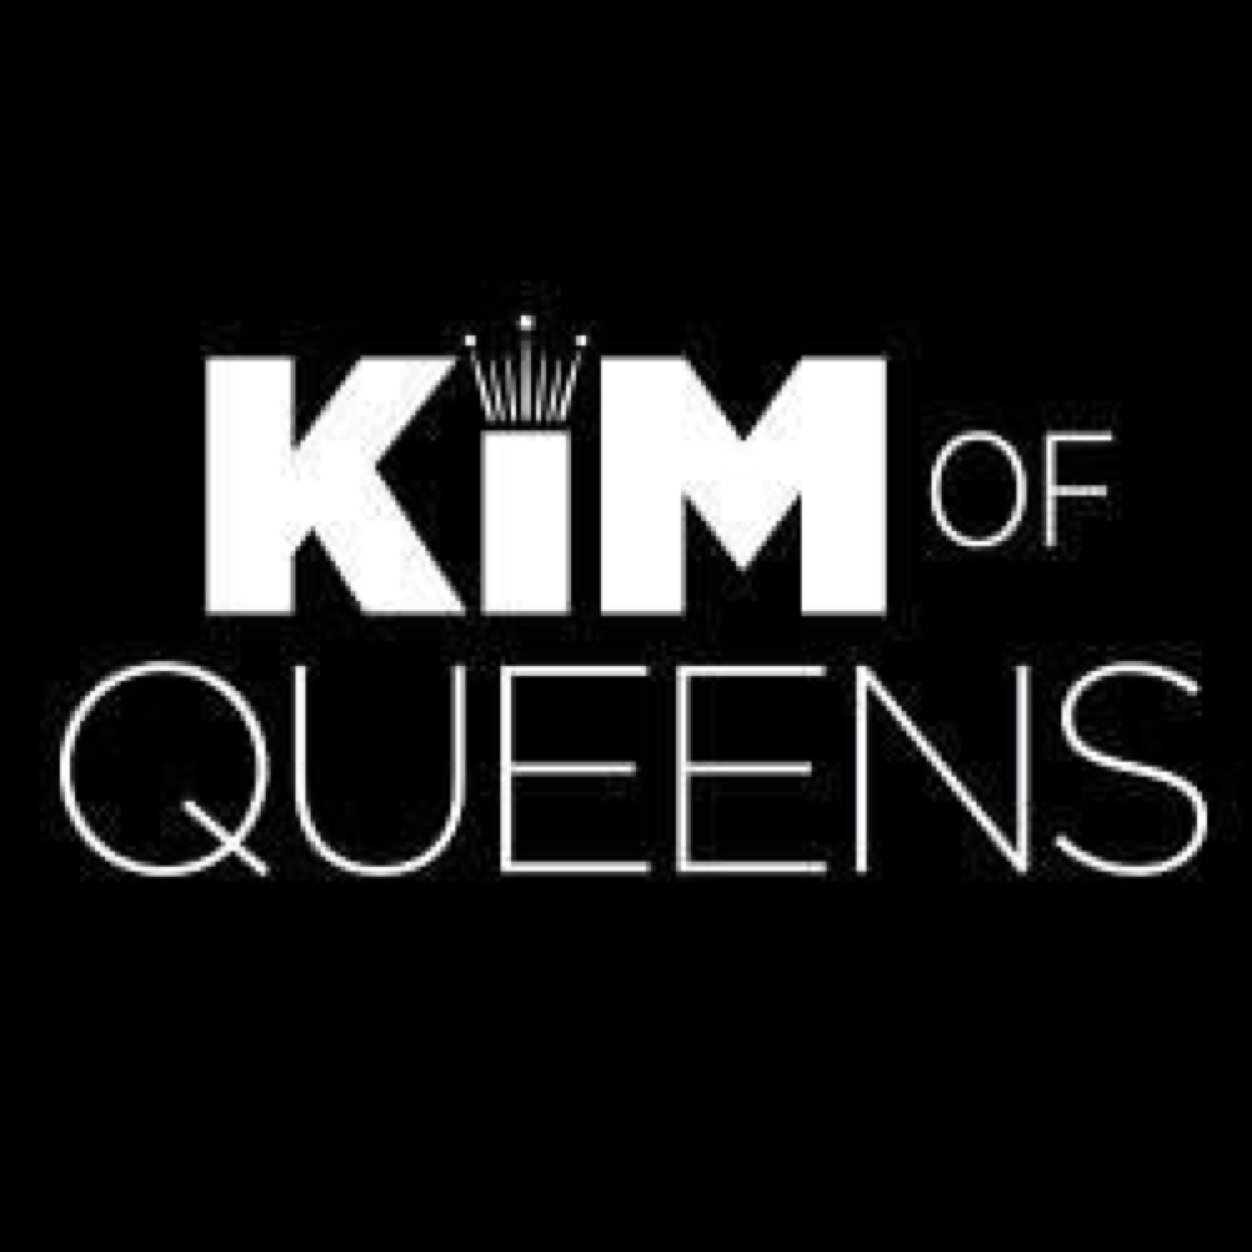 Kim of queens! Hannah follows❤️ watch the show #KimofQueens tuesday 10/9c